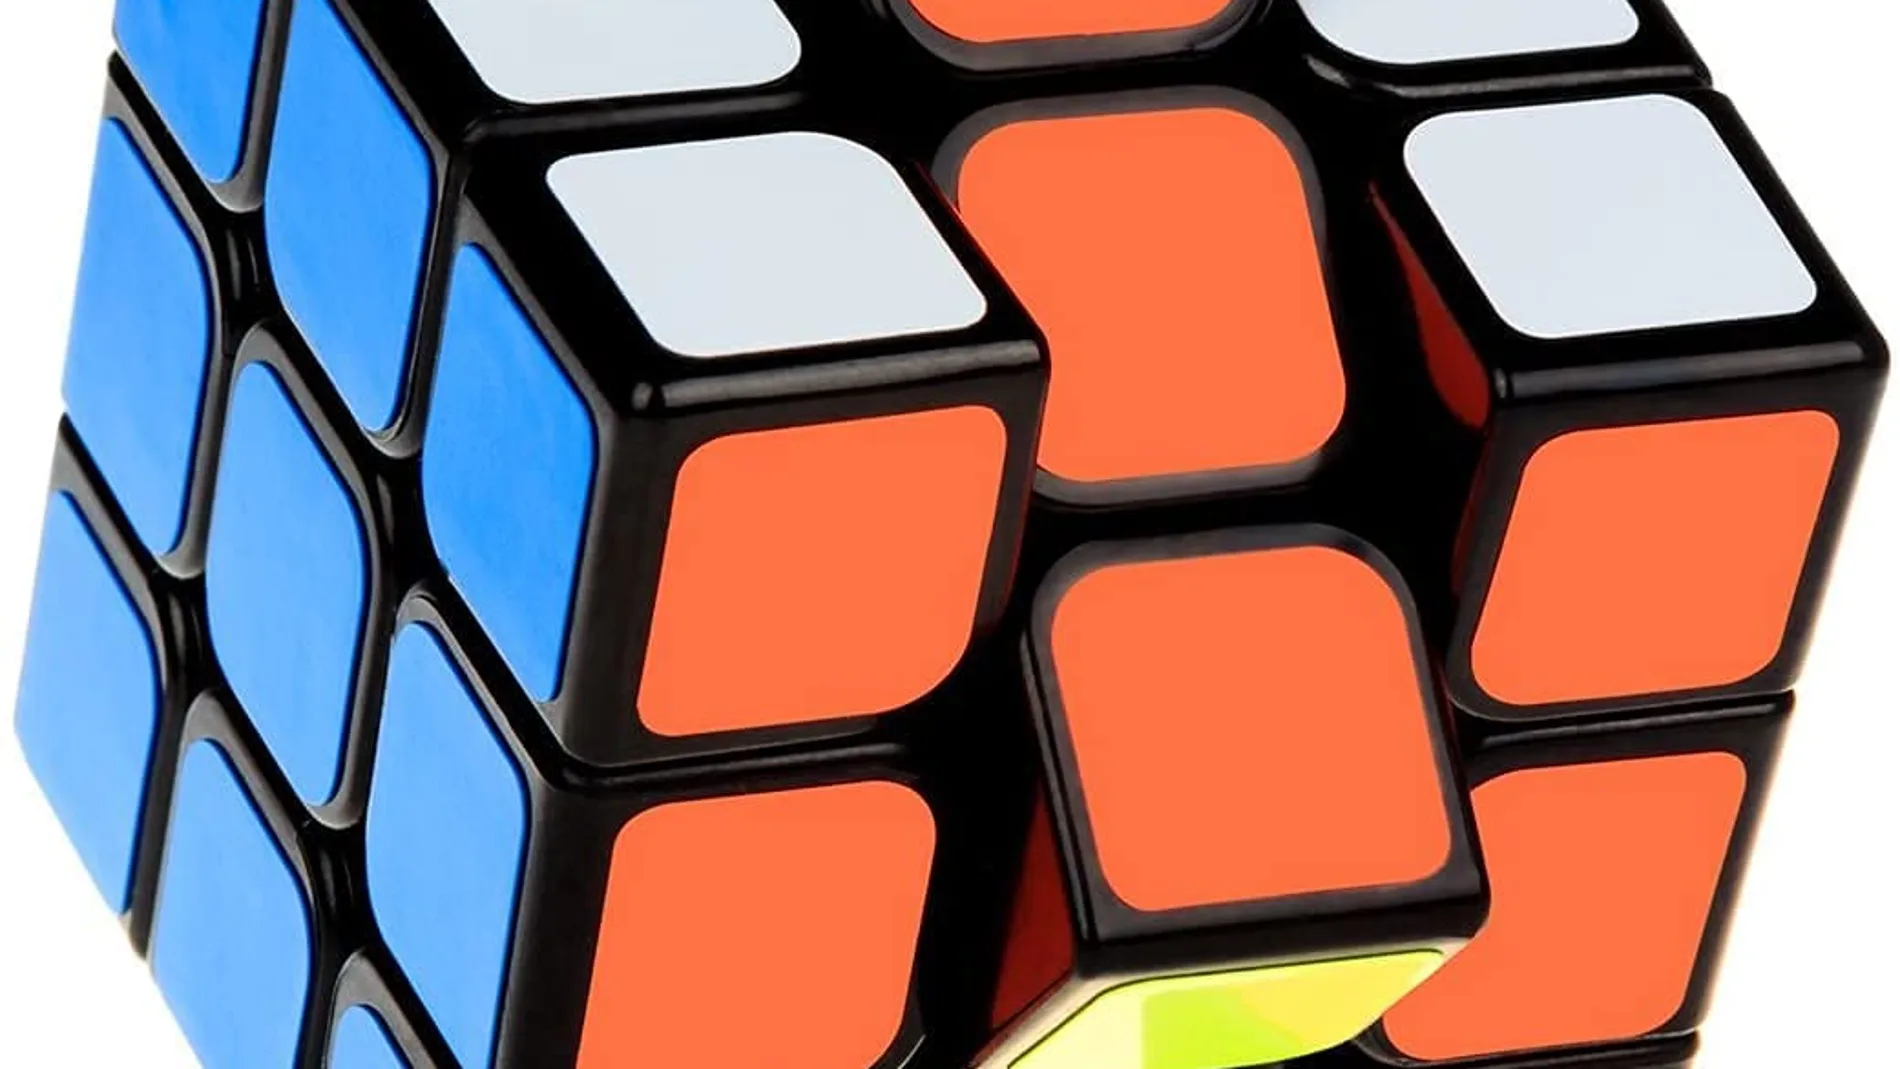 Desgracia labio camuflaje El sencillo truco para resolver el cubo de Rubik en apenas unos segundos